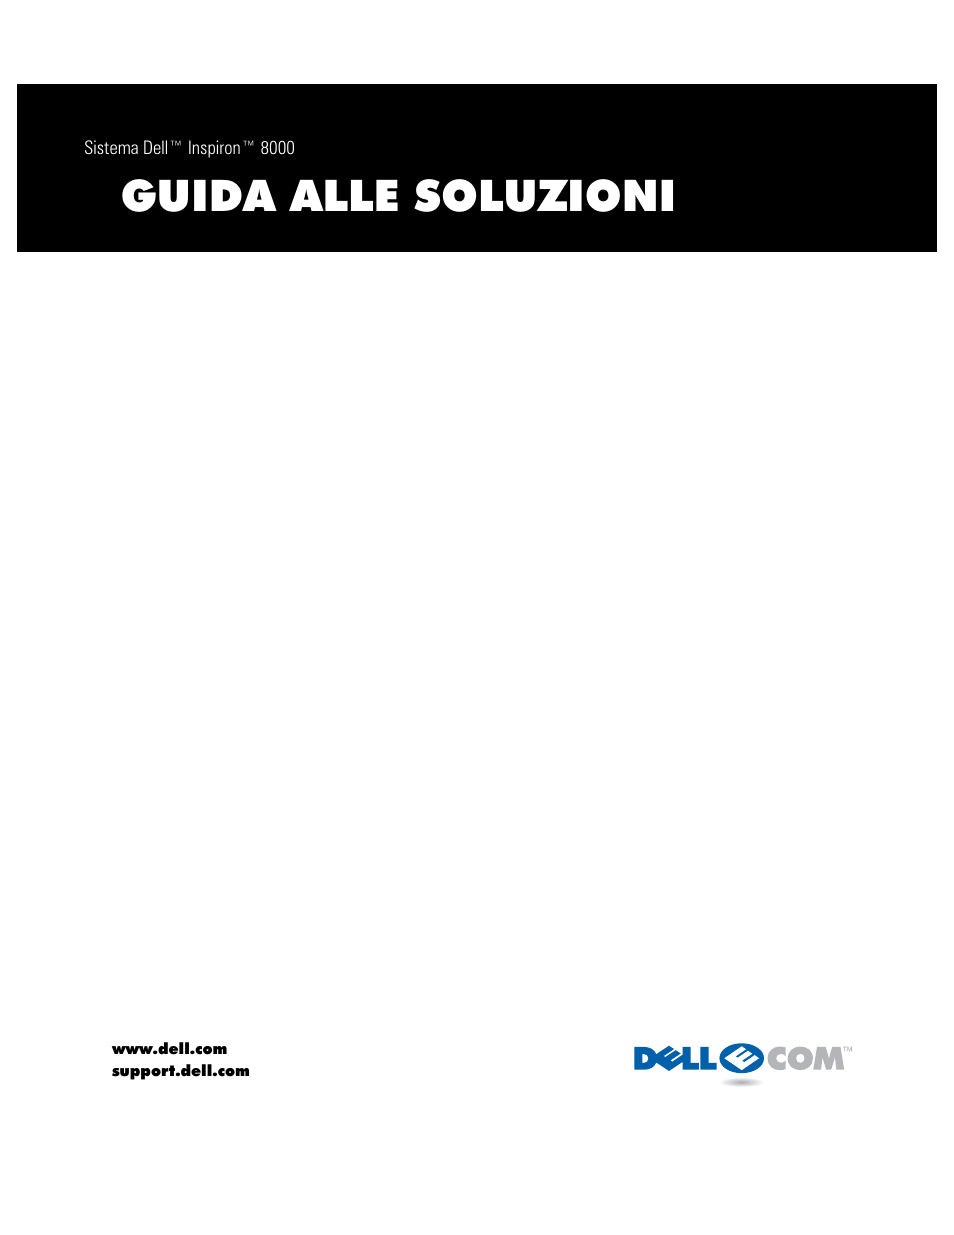 Dell Inspiron 8000 Manuale d'uso | Pagine: 92